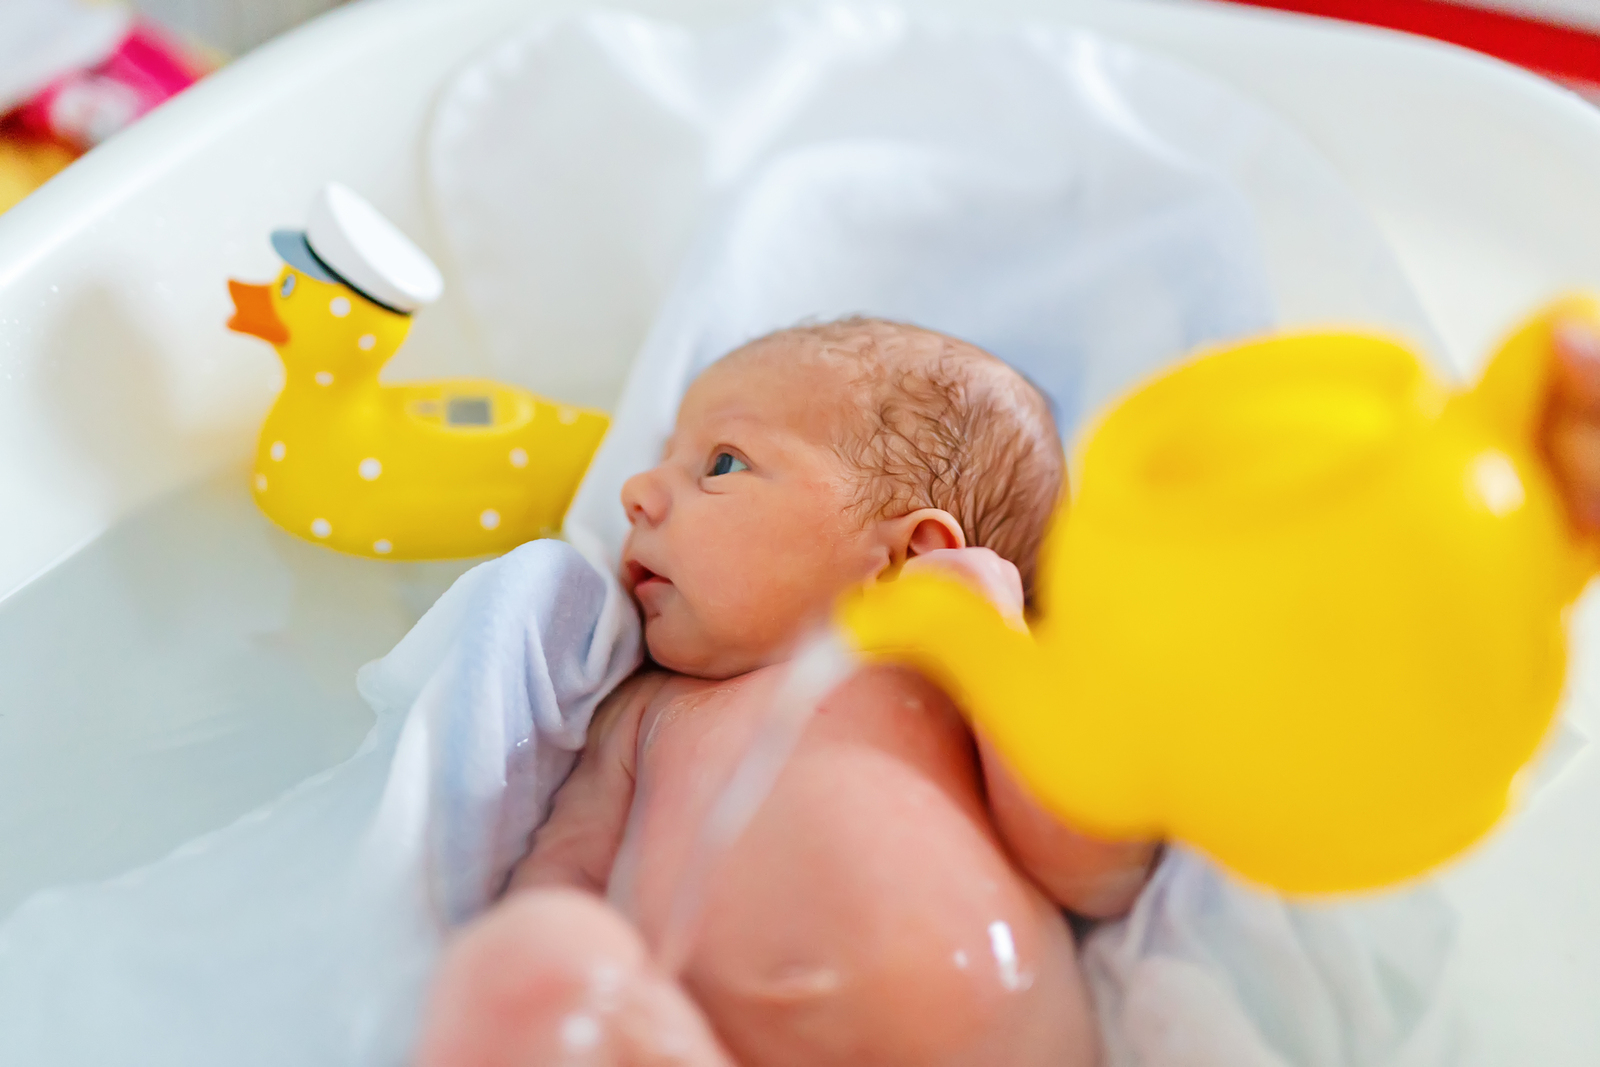 Kadica je obavezni dio opreme za kupanje, a bez patkice možete okupati bebu